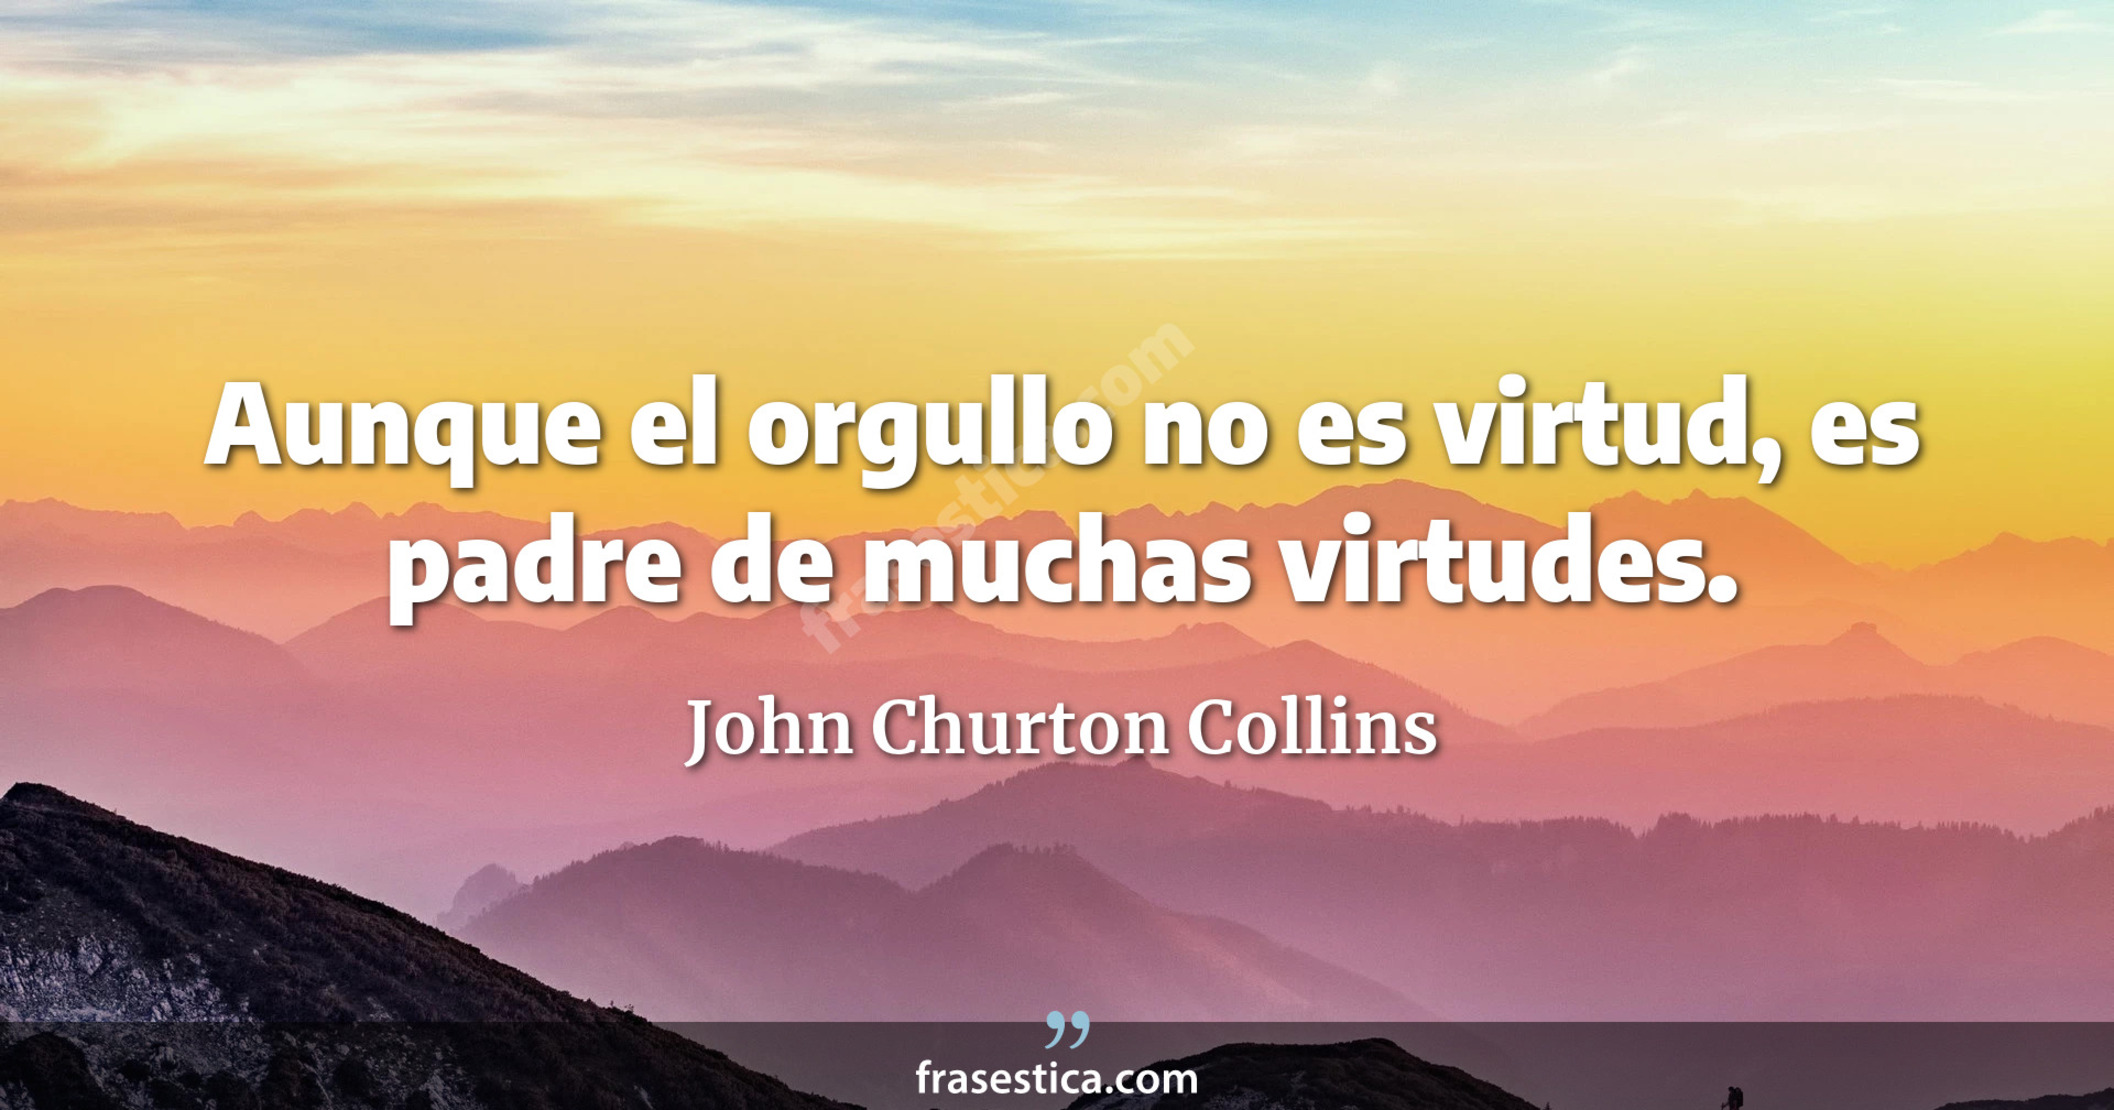 Aunque el orgullo no es virtud, es padre de muchas virtudes. - John Churton Collins